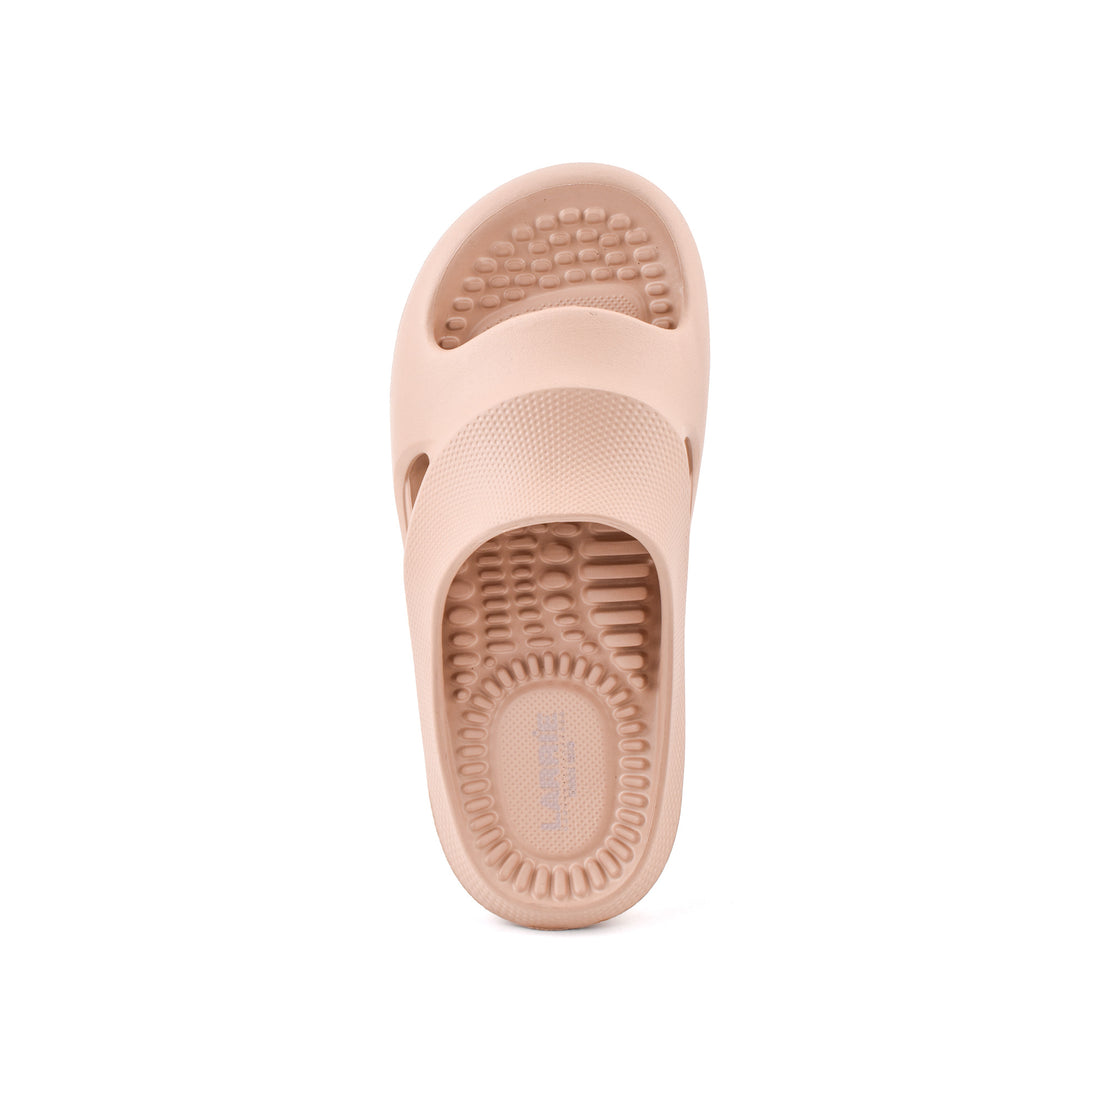 LARRIE Ladies Almond Thick Sole Comfortable Indoor-Outdoor Sandals